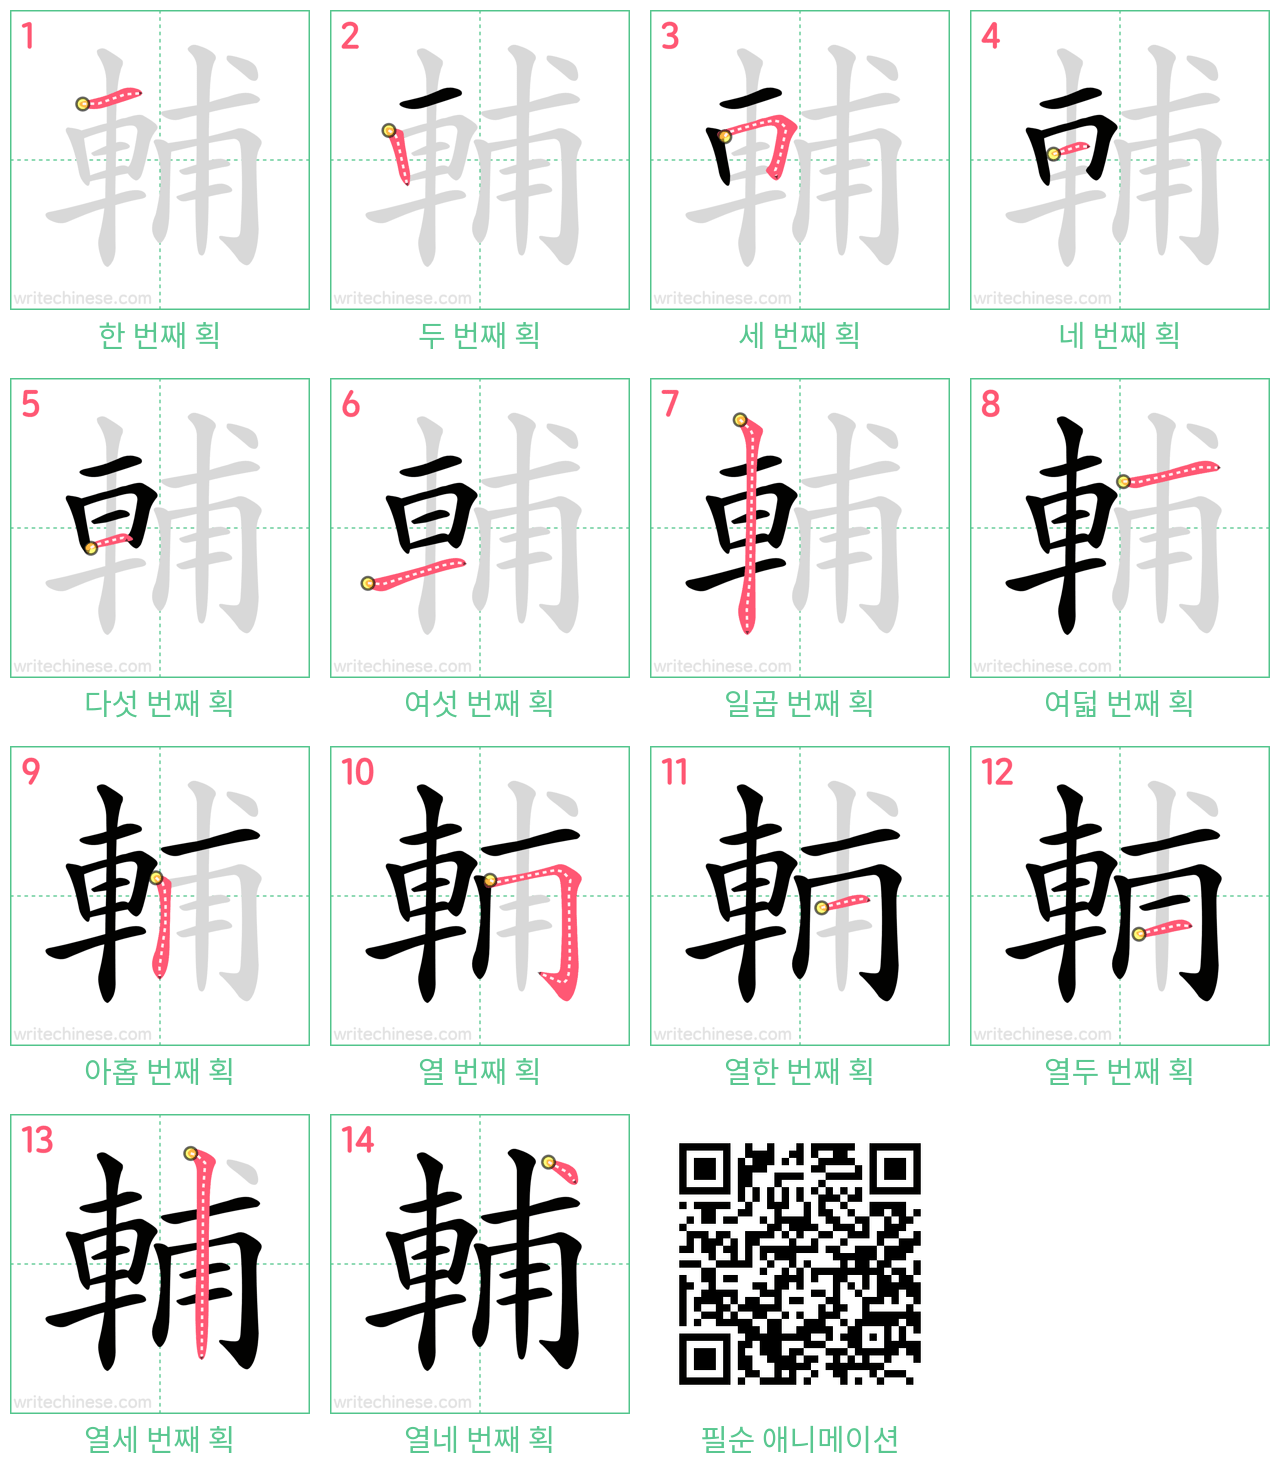 輔 step-by-step stroke order diagrams